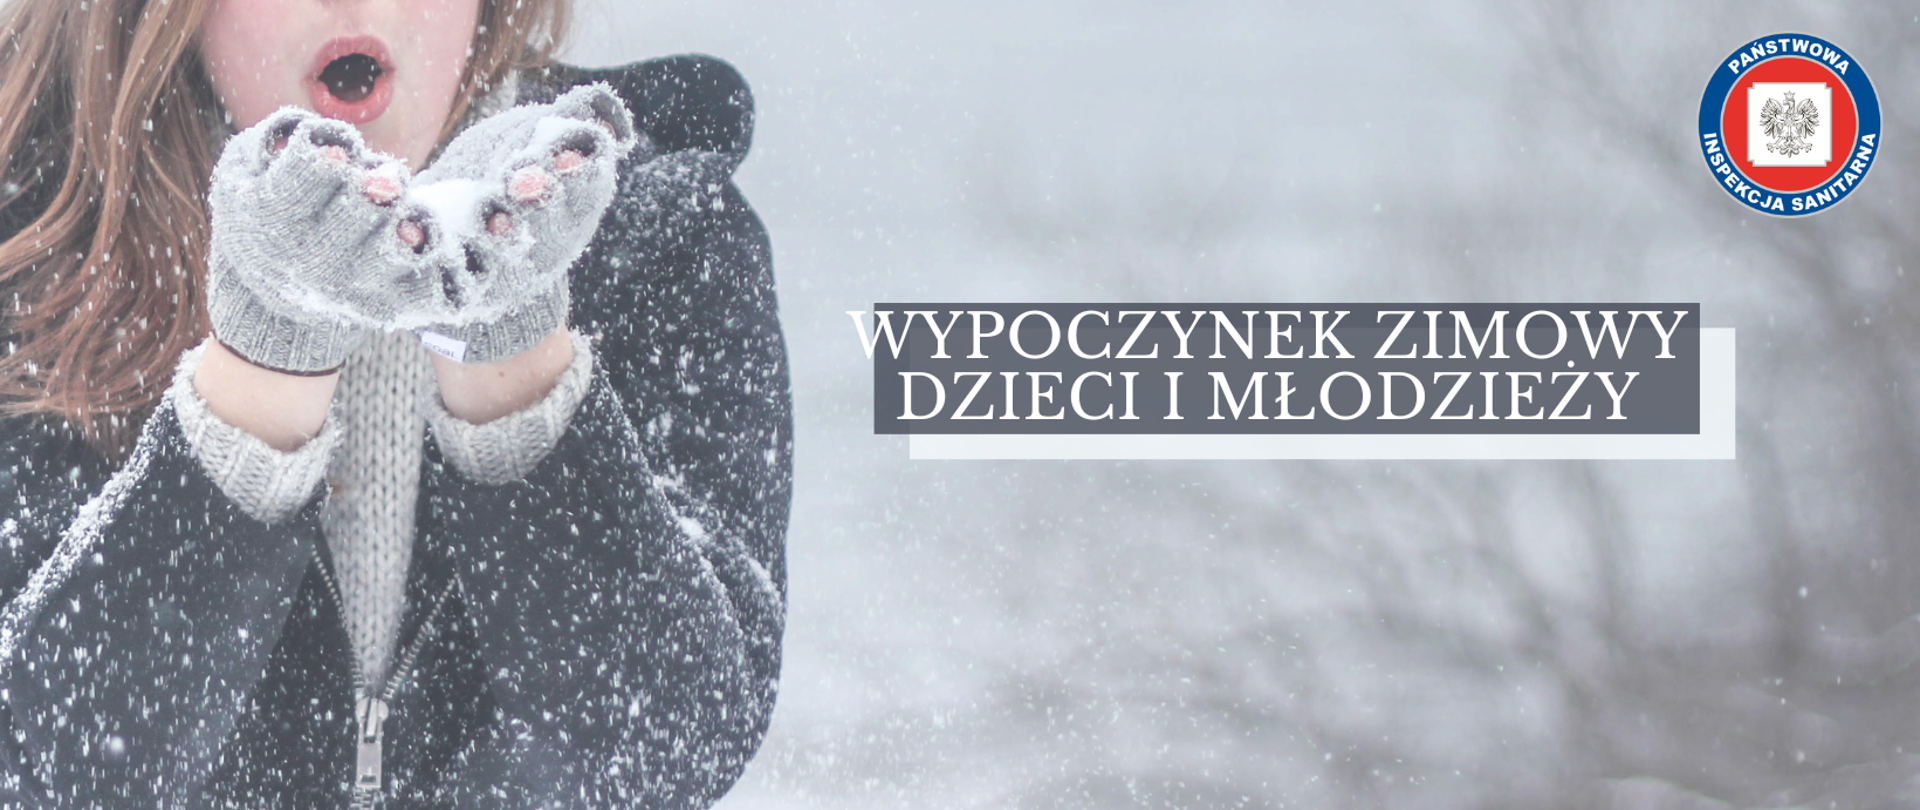 Zdjęcie przedstawia kobietę zdmuchującą śnieg. Wypoczynek zimowy dzieci i młodzieży